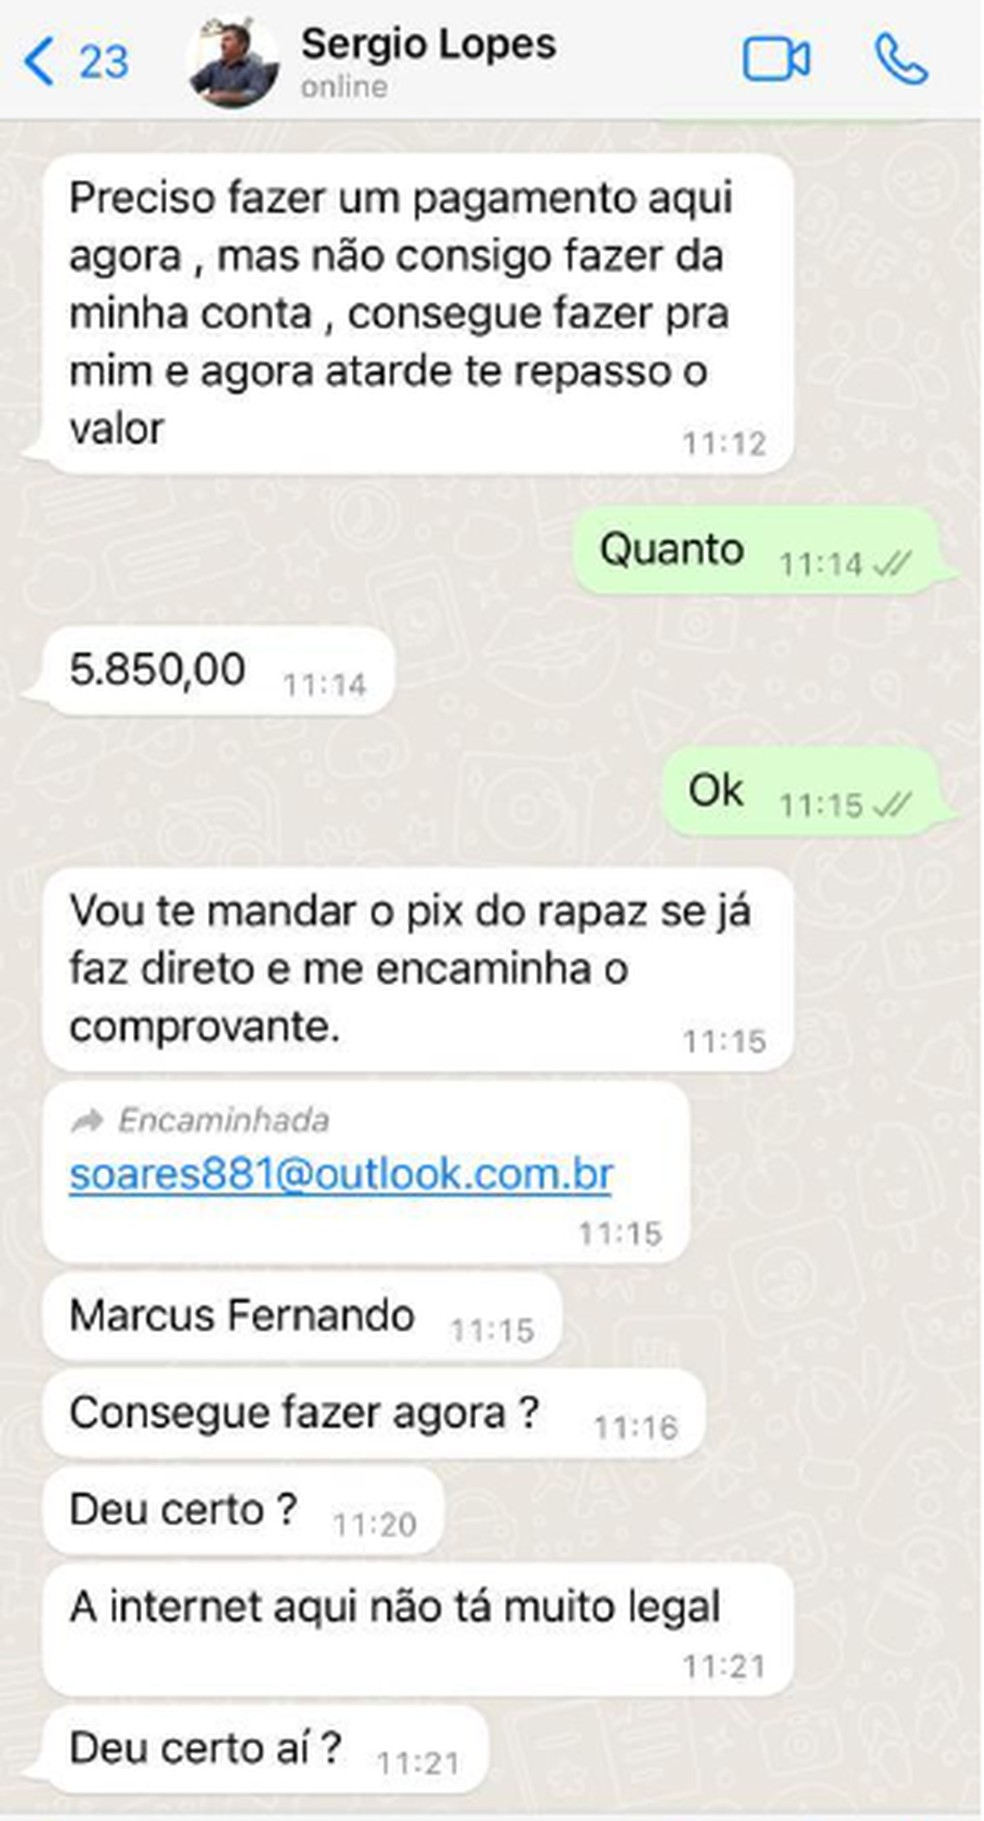 Prefeito Sérgio Lopes teve o nome usado para pedir dinheiro no whatsApp — Foto: Arquivo pessoal